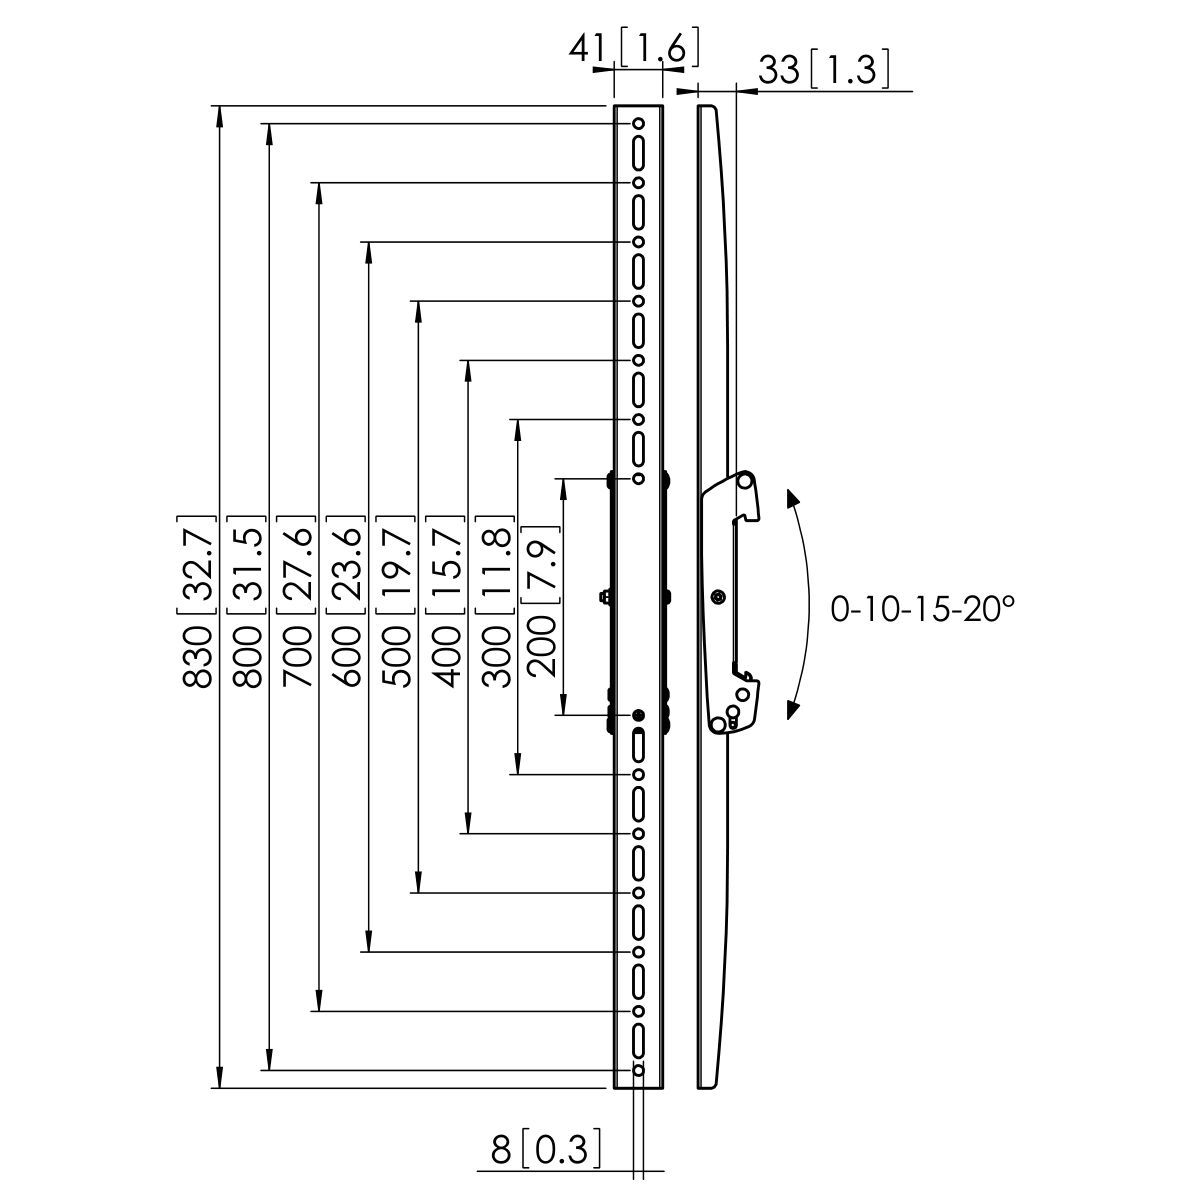 Vogel's PFS 3308 Bandes basculante interface écran - Dimensions